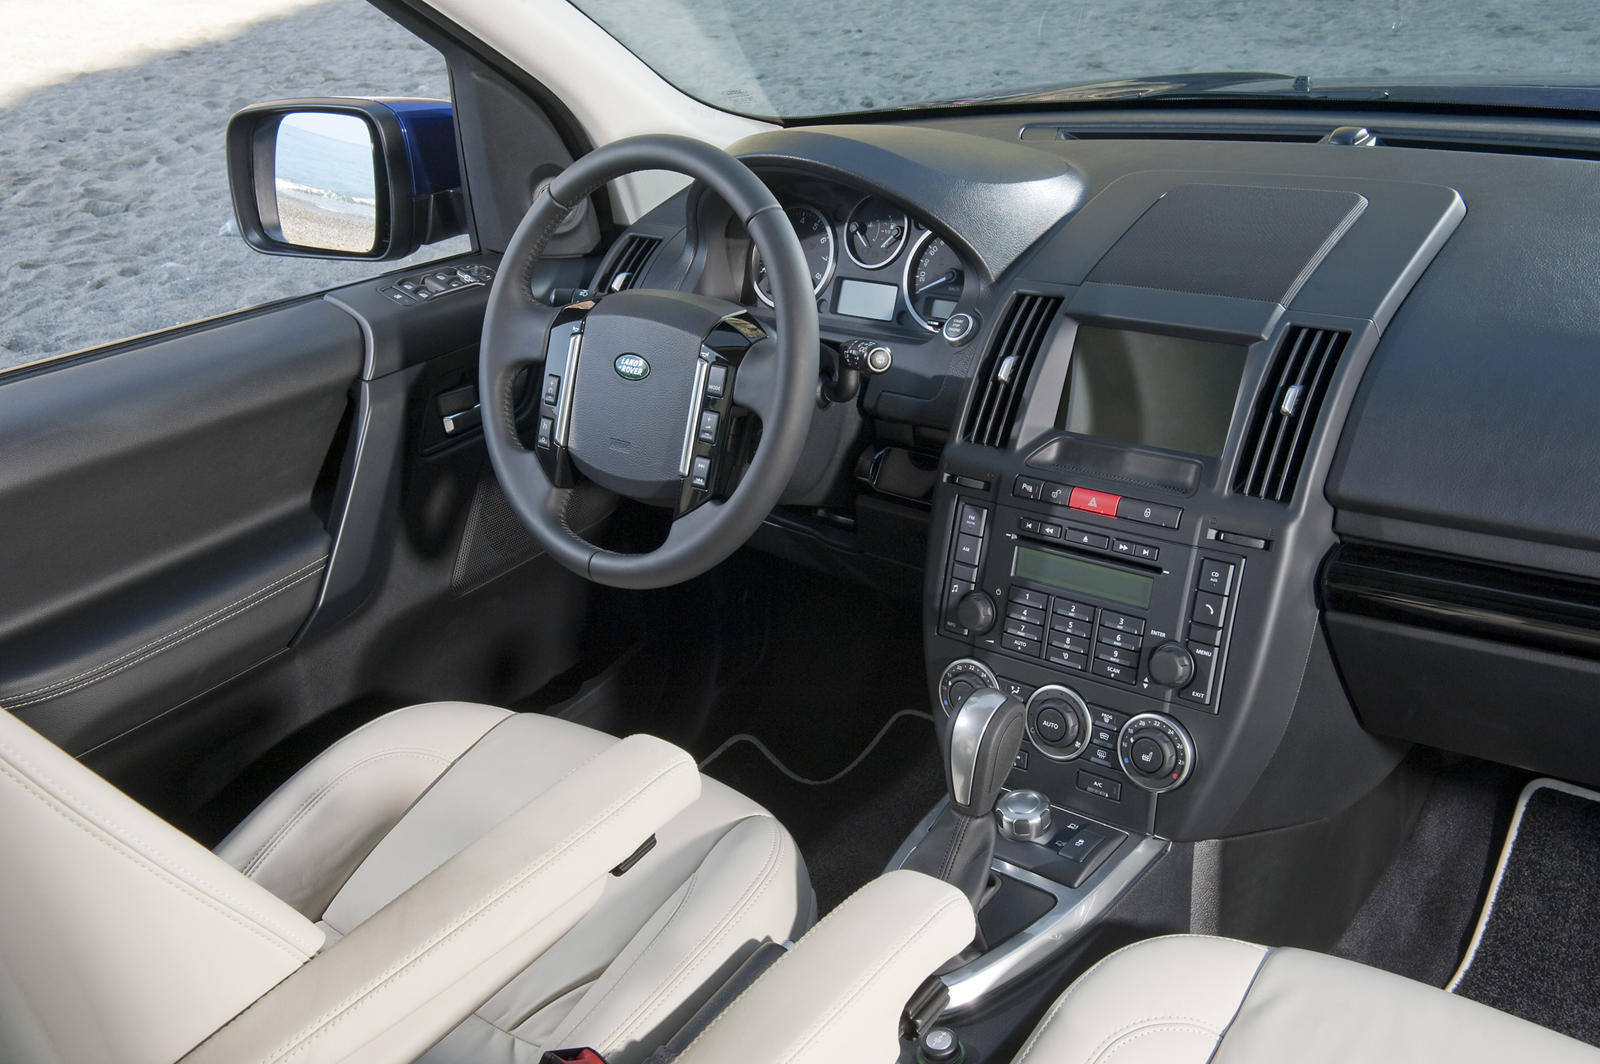 2012 Land Rover LR2 Interior Photos | CarBuzz